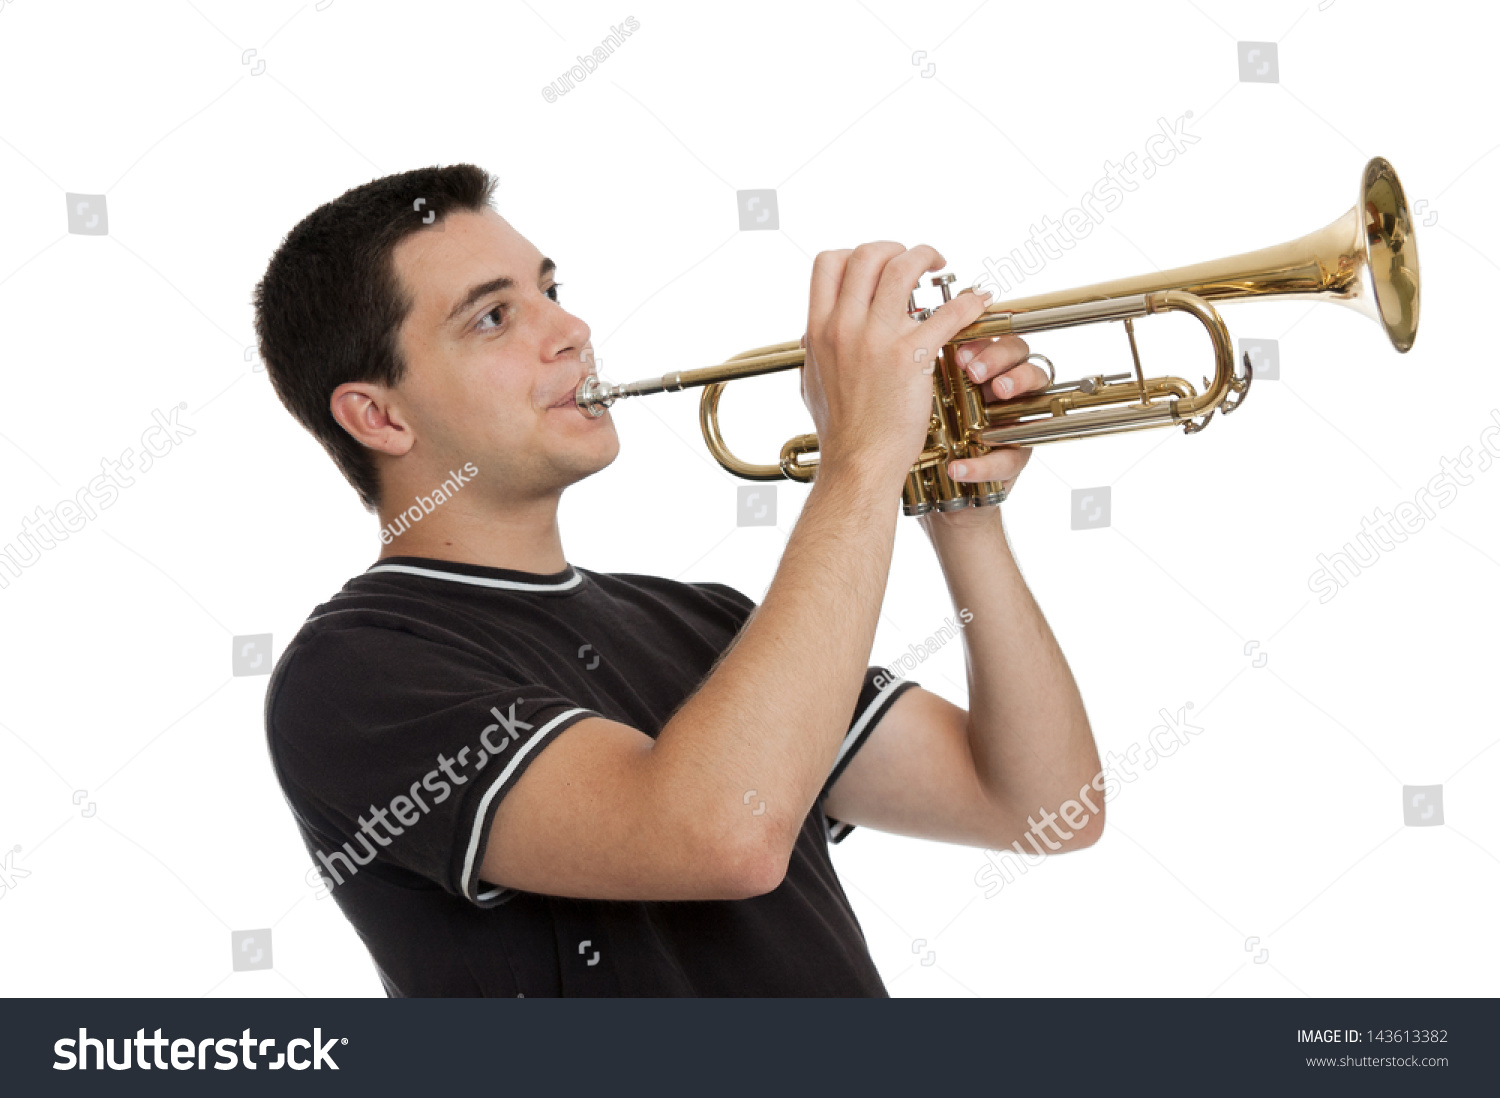 Дуть дудку. Музыкальная труба. Человек играющий на трубе. Человек с музыкальным инструментом. Трубач музыкальный инструмент.